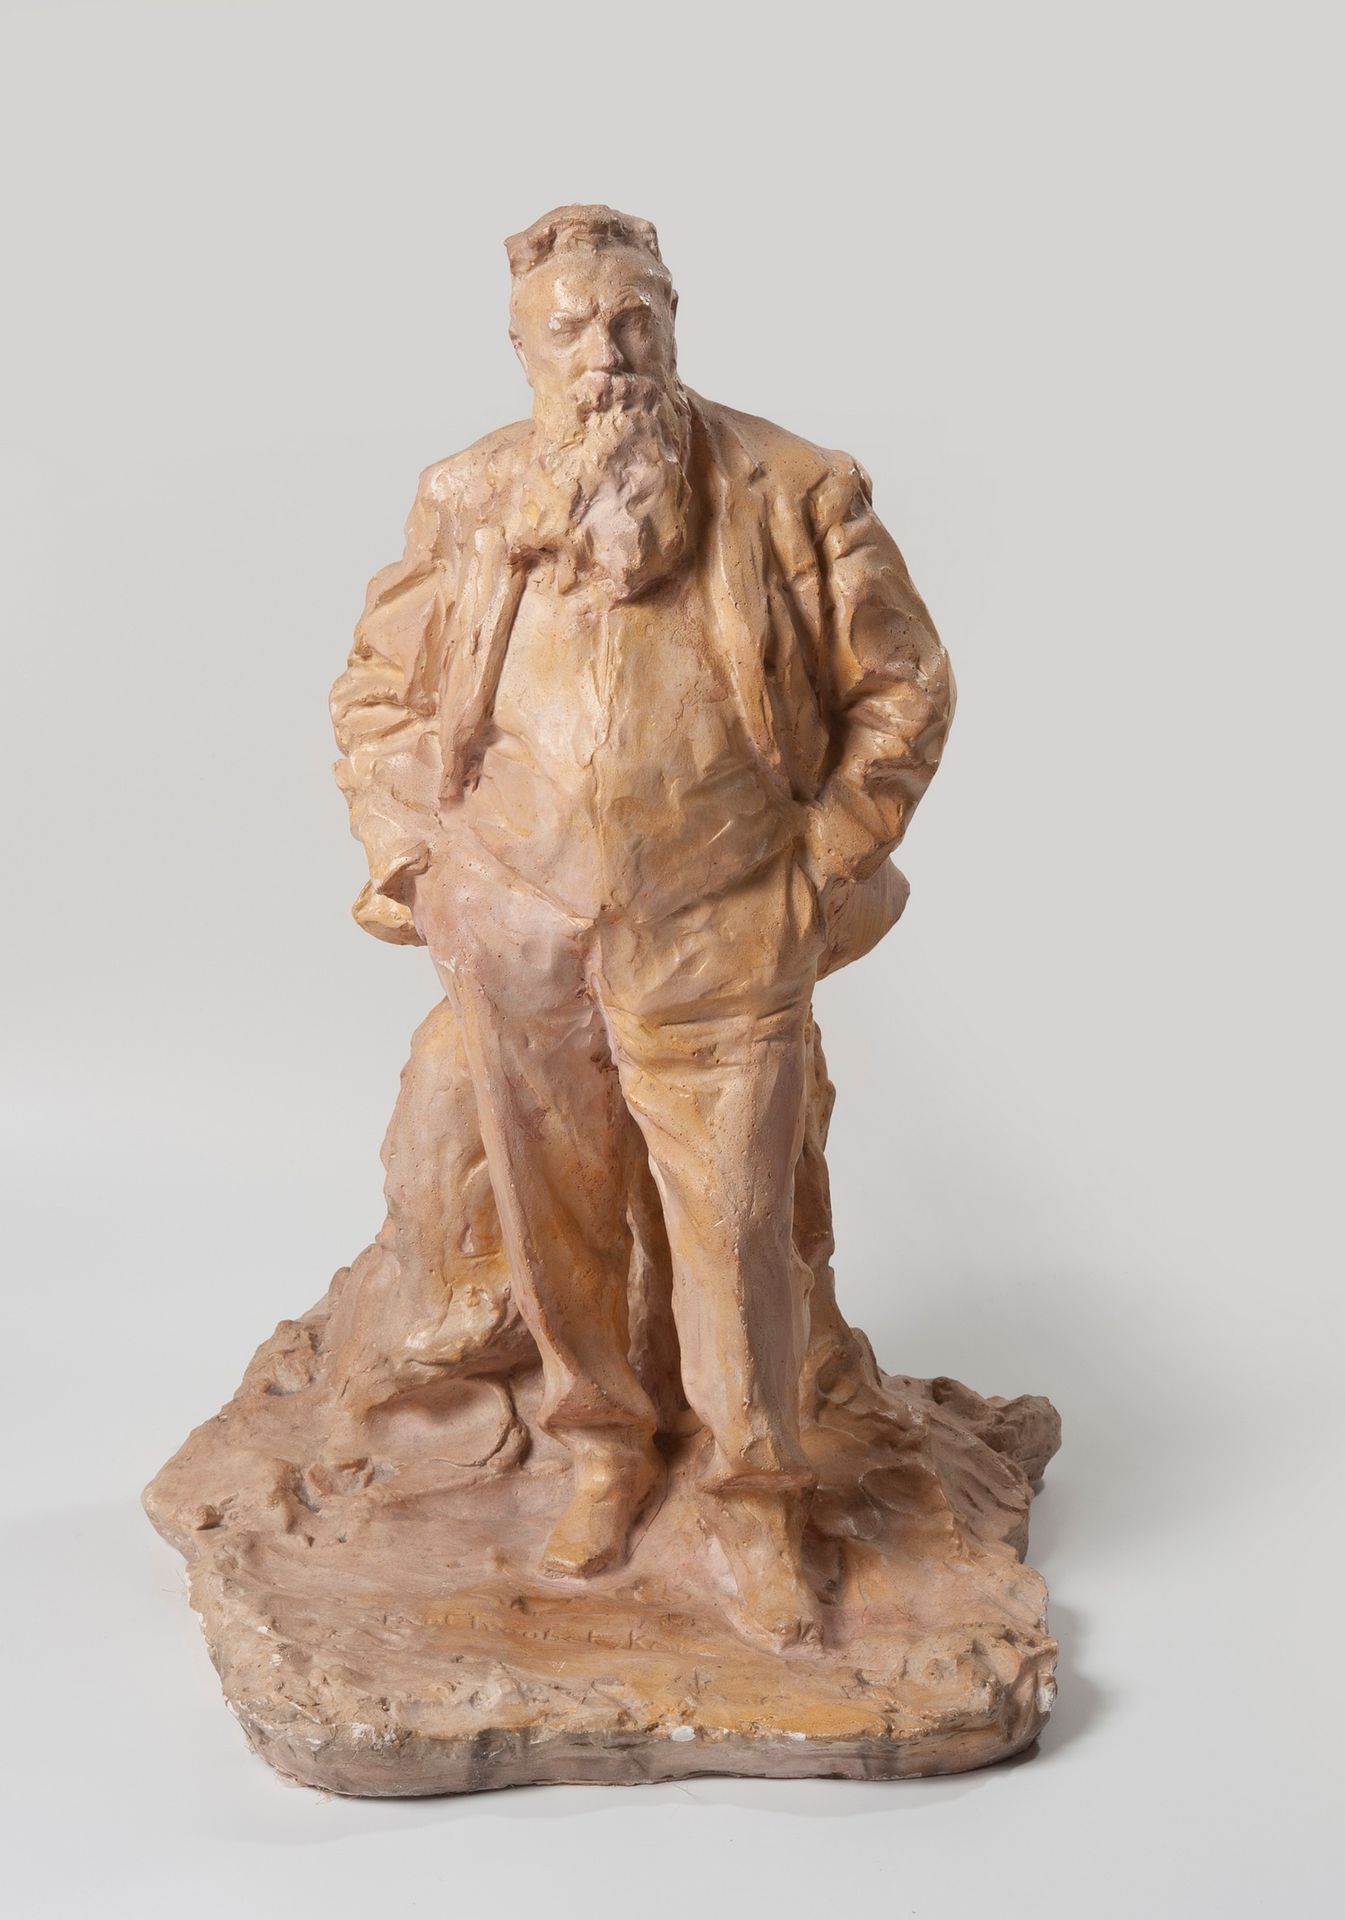 Null Prinz Paul TROUBETZKOY ( 1866 -1938 Russland-Italien) nach

Auguste Rodin

&hellip;